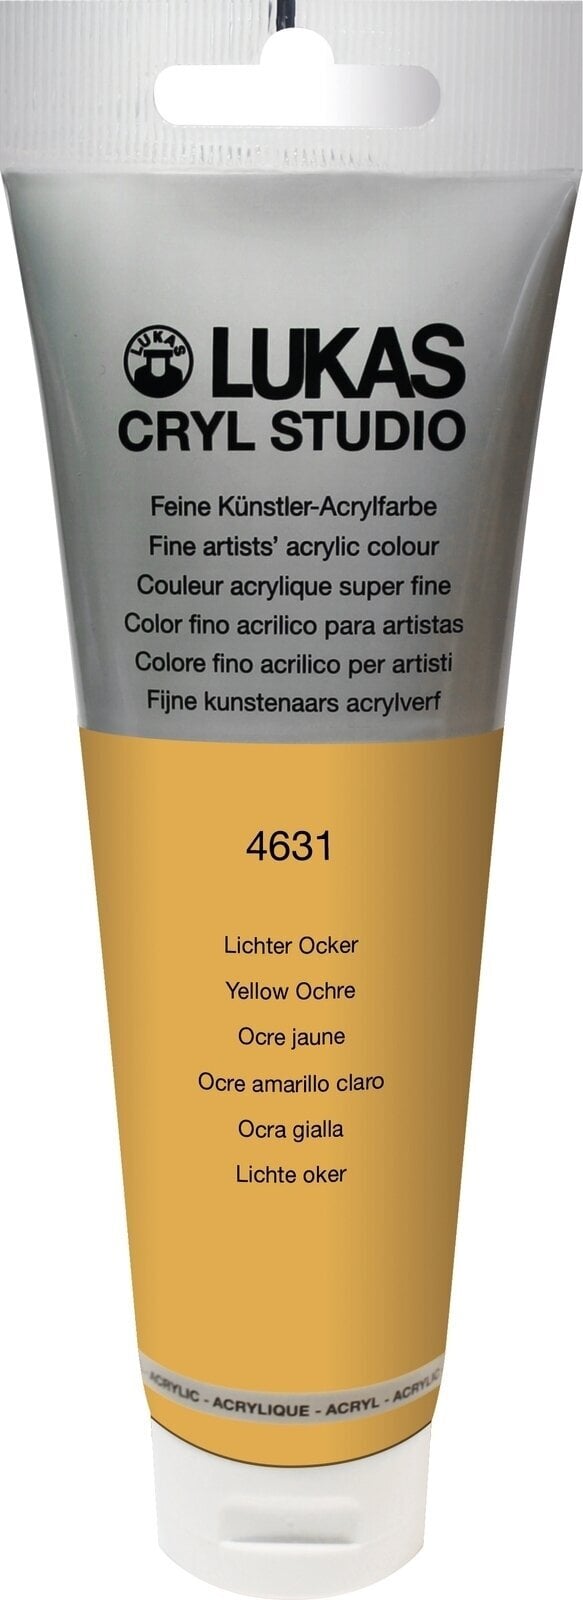 Acrylfarbe Lukas Cryl Studio Acrylic Paint Plastic Tube Acrylfarbe Yellow Ochre 125 ml 1 Stck